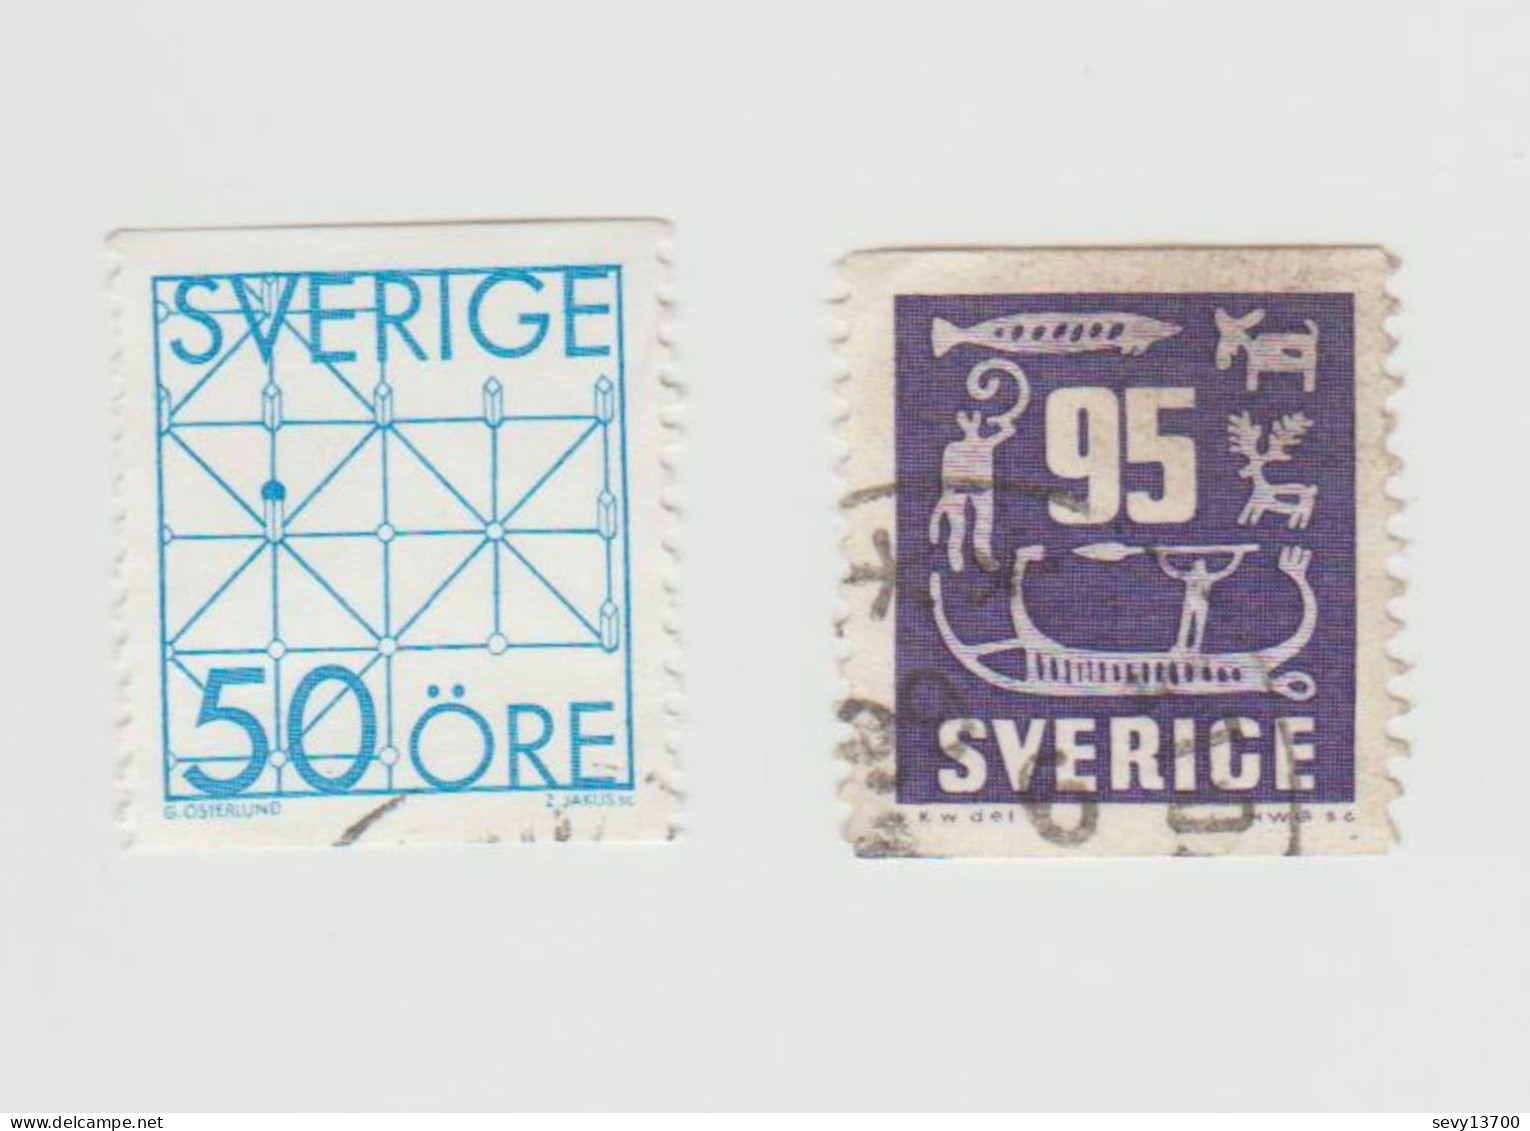 Suède lot de 41 timbres oblitérés